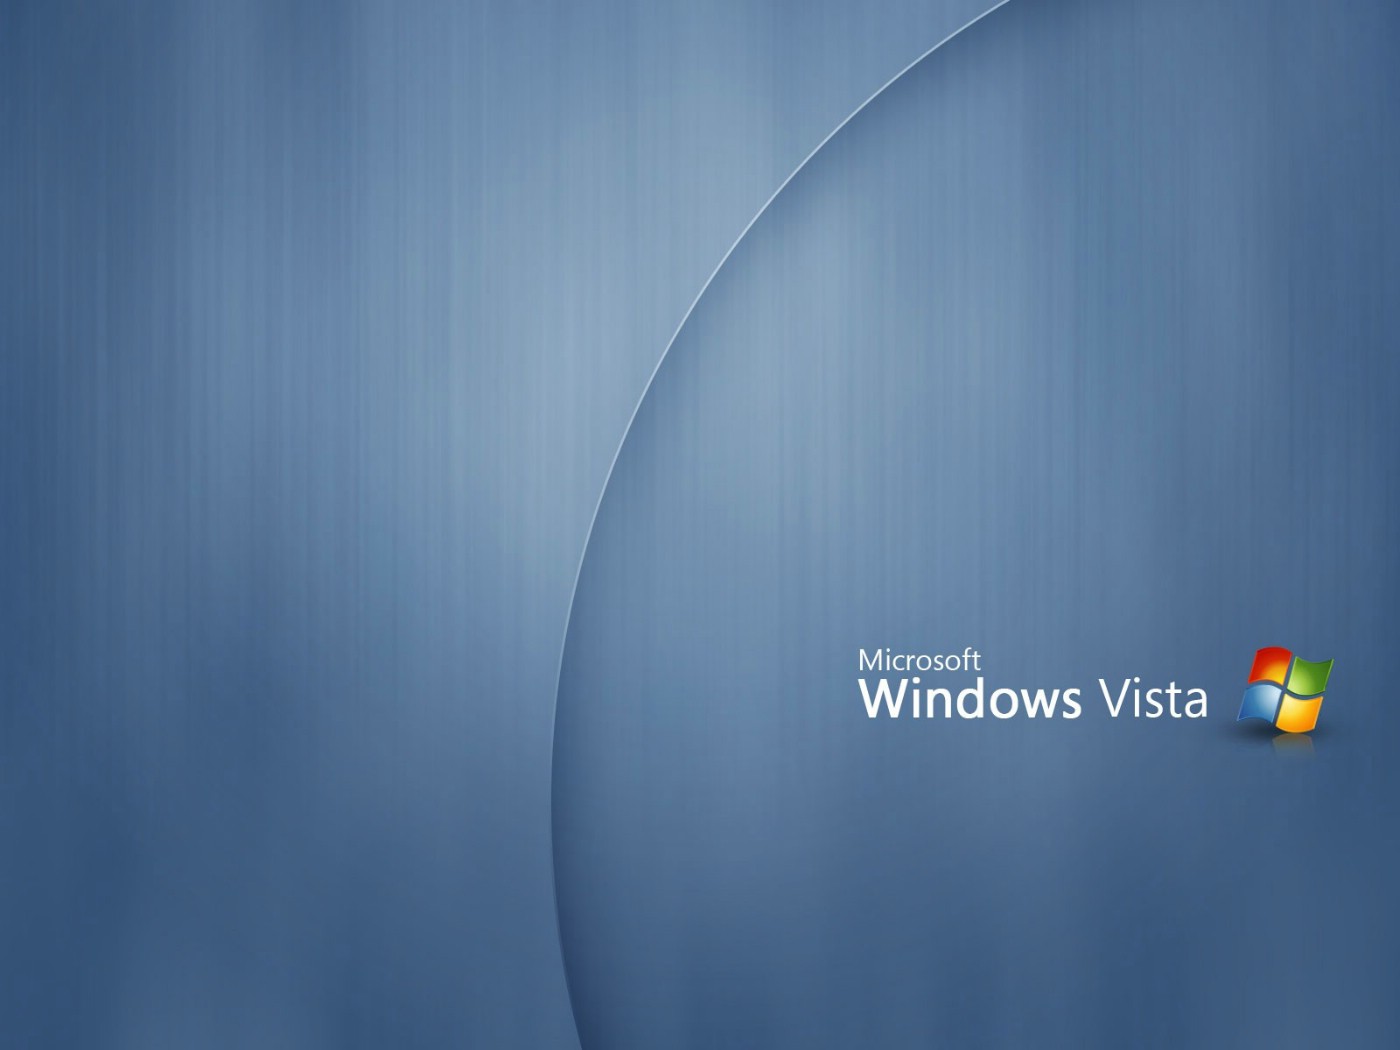 壁纸1400x1050Windows Vista壁纸 壁纸19壁纸 Windows Vista壁纸壁纸 Windows Vista壁纸图片 Windows Vista壁纸素材 系统壁纸 系统图库 系统图片素材桌面壁纸